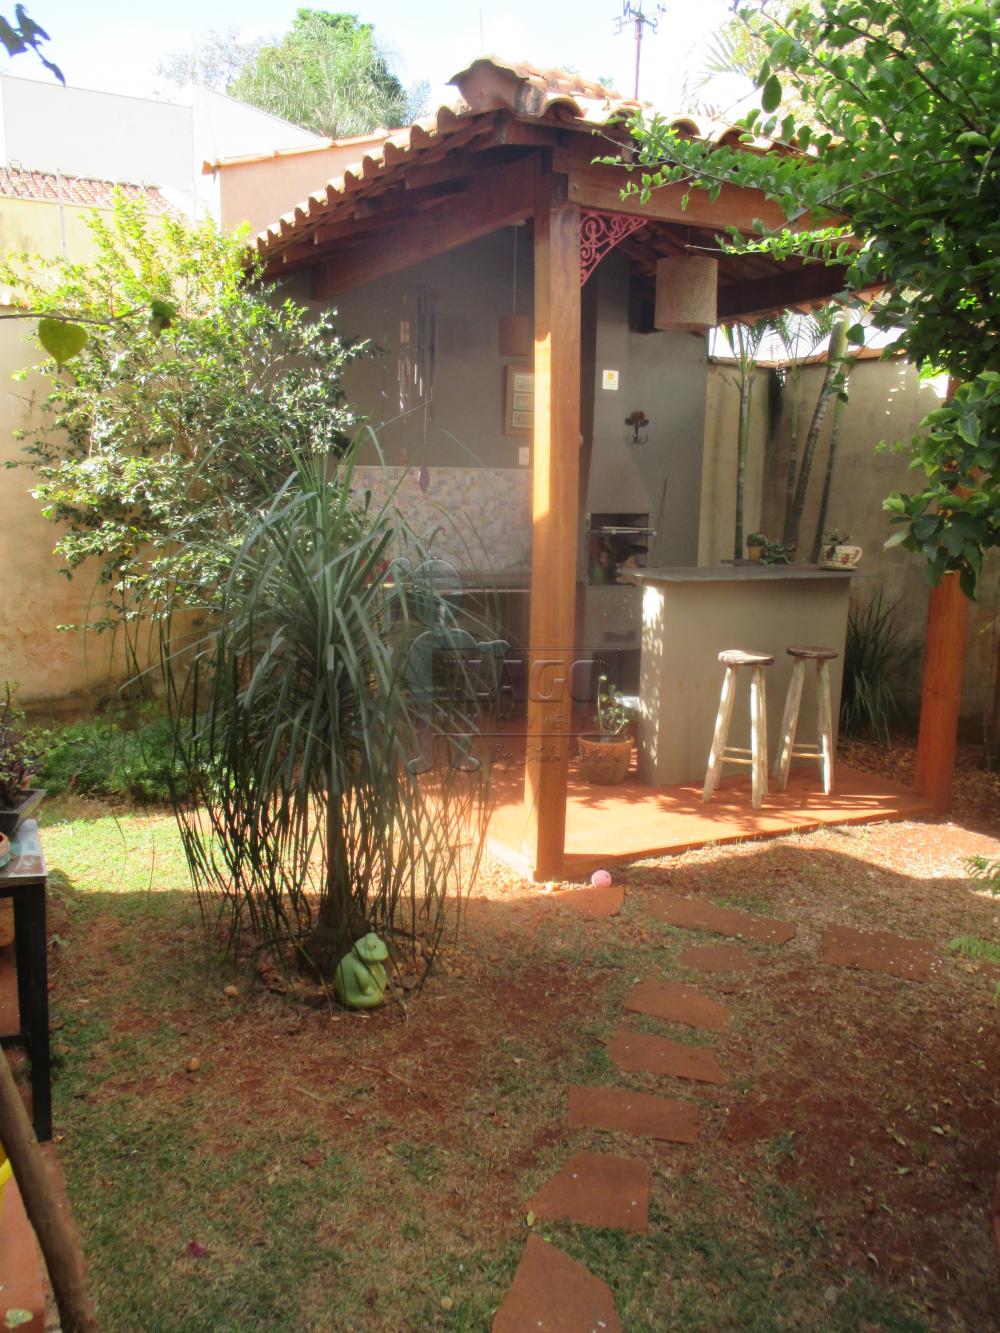 Alugar Casas / Padrão em Ribeirão Preto R$ 2.200,00 - Foto 14